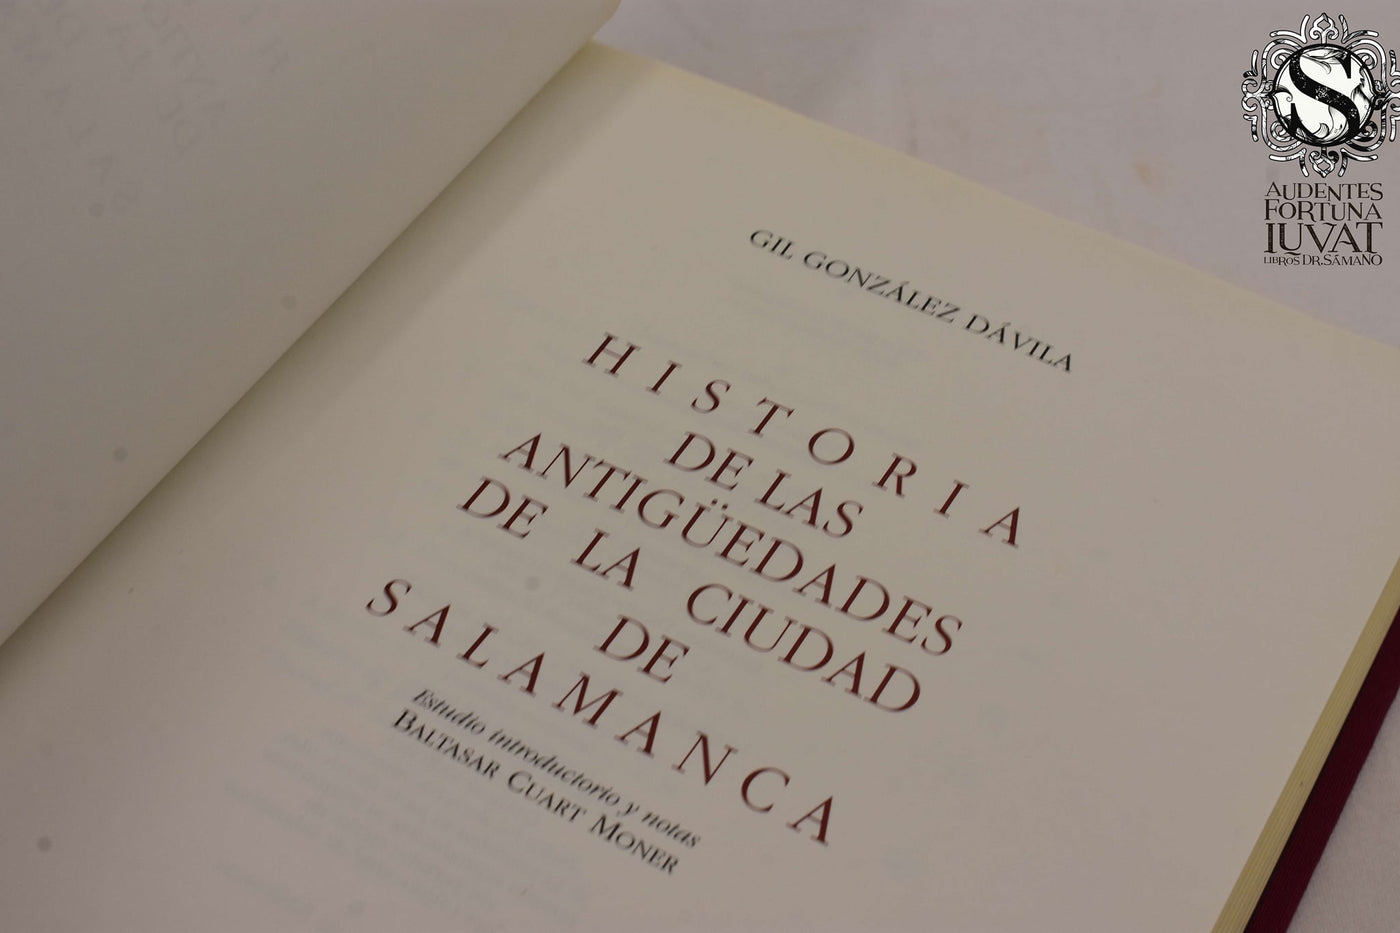 HISTORIA DE LAS ANTIGÜEDADES DE LA CIUDAD DE SALAMANCA - Gil González de Avila